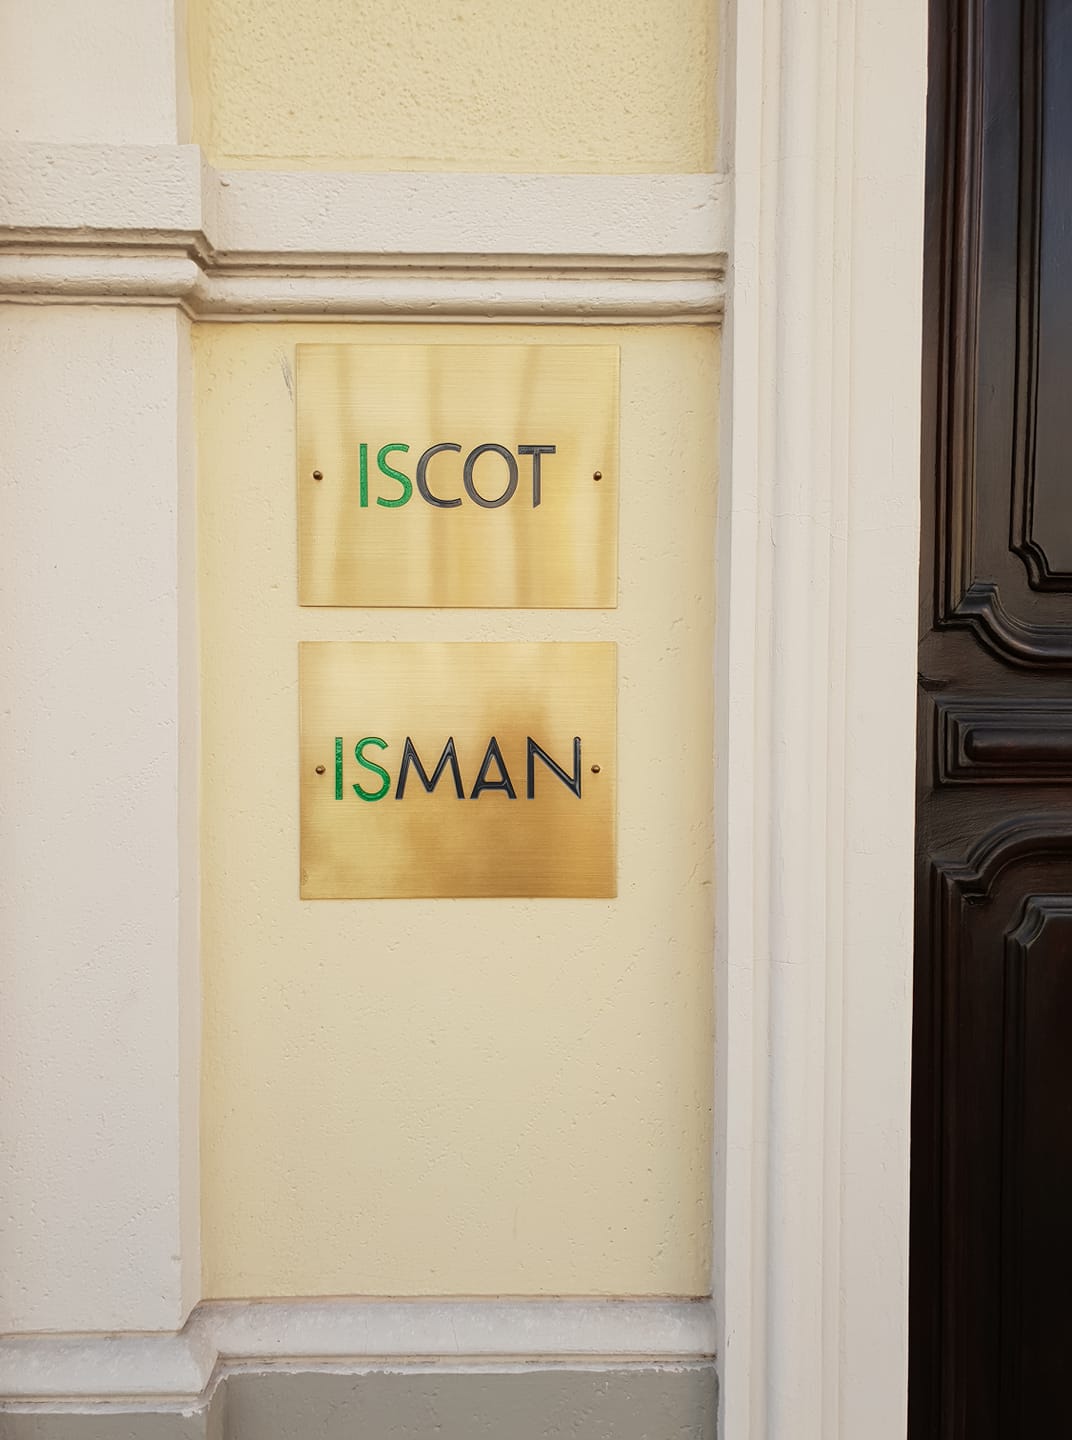 ISCOT-ISMAN